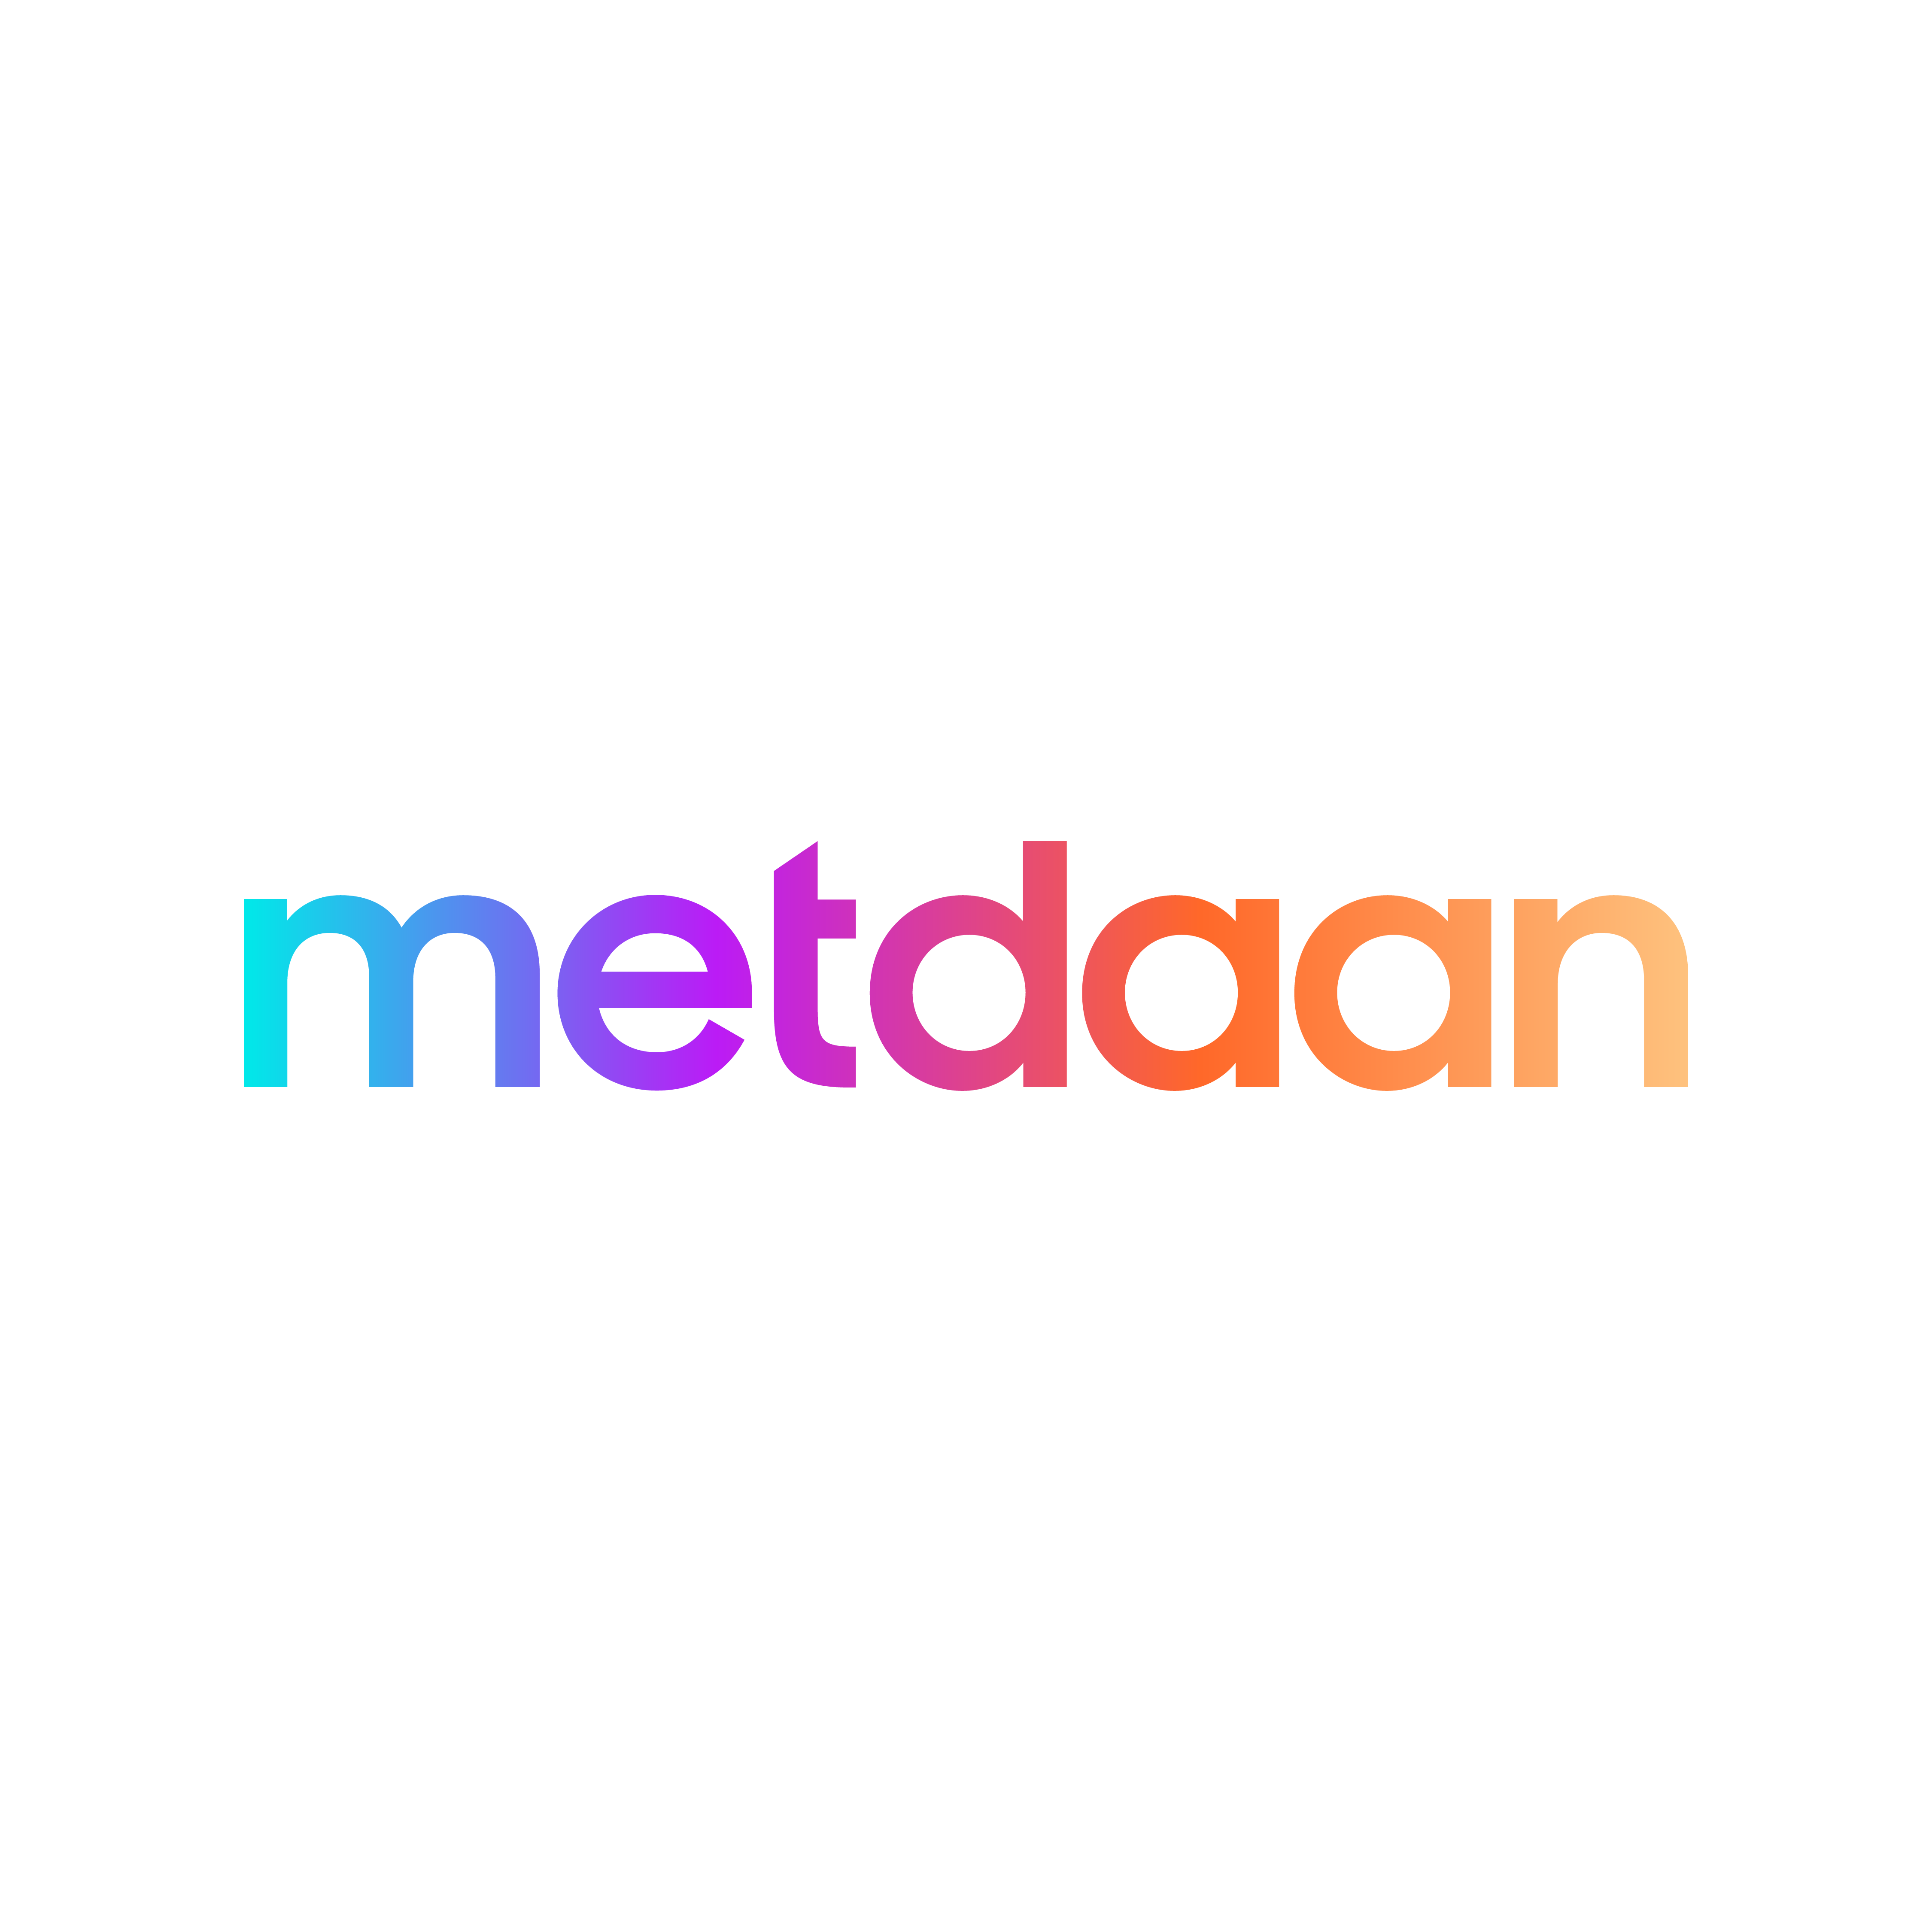 MetDaan